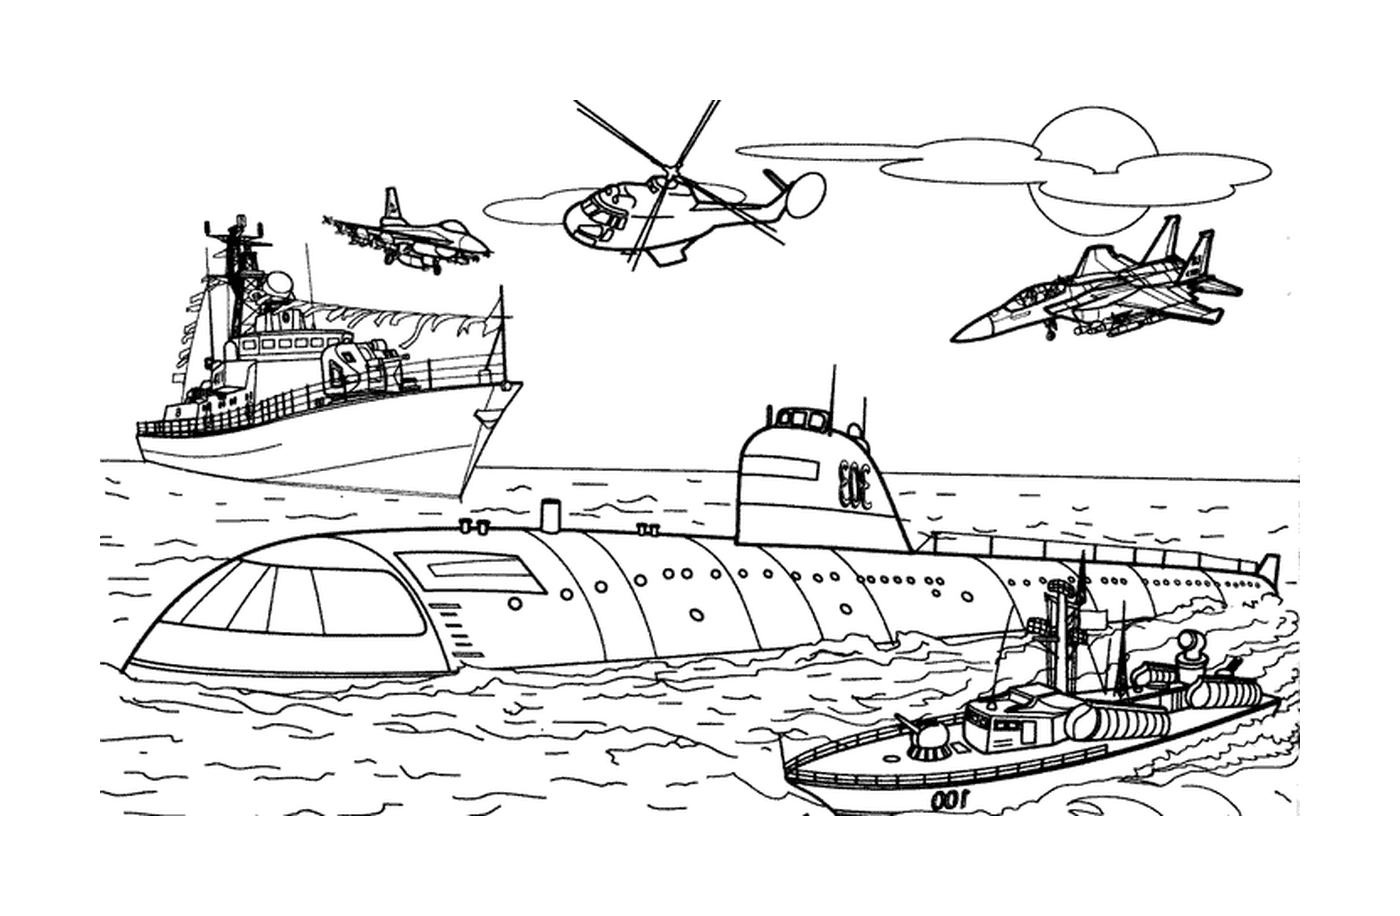  Transporte militar: barco e helicóptero 